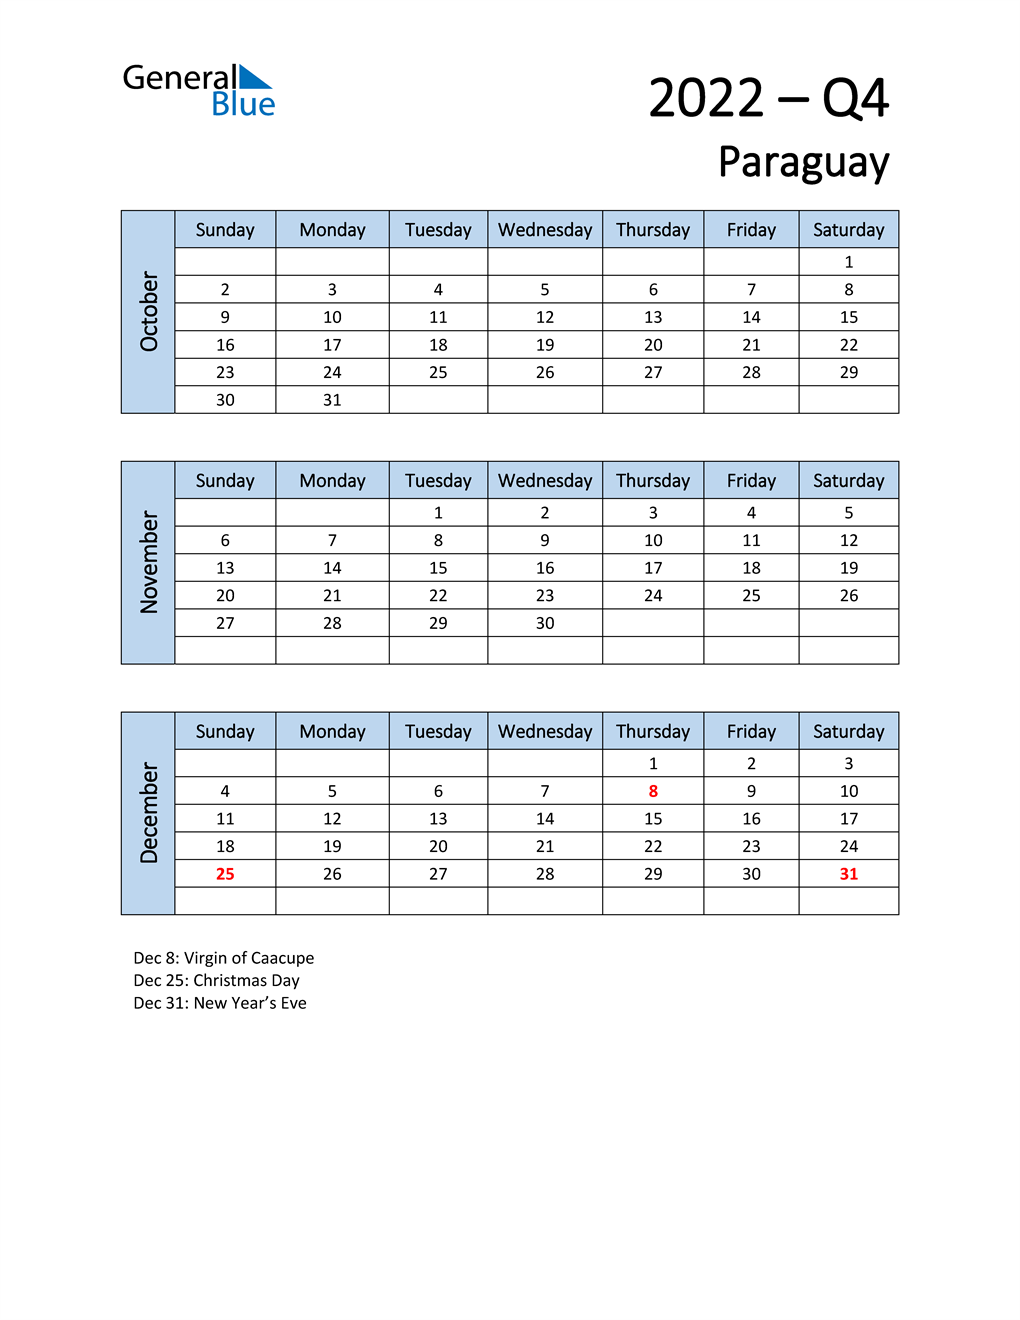  Free Q4 2022 Calendar for Paraguay